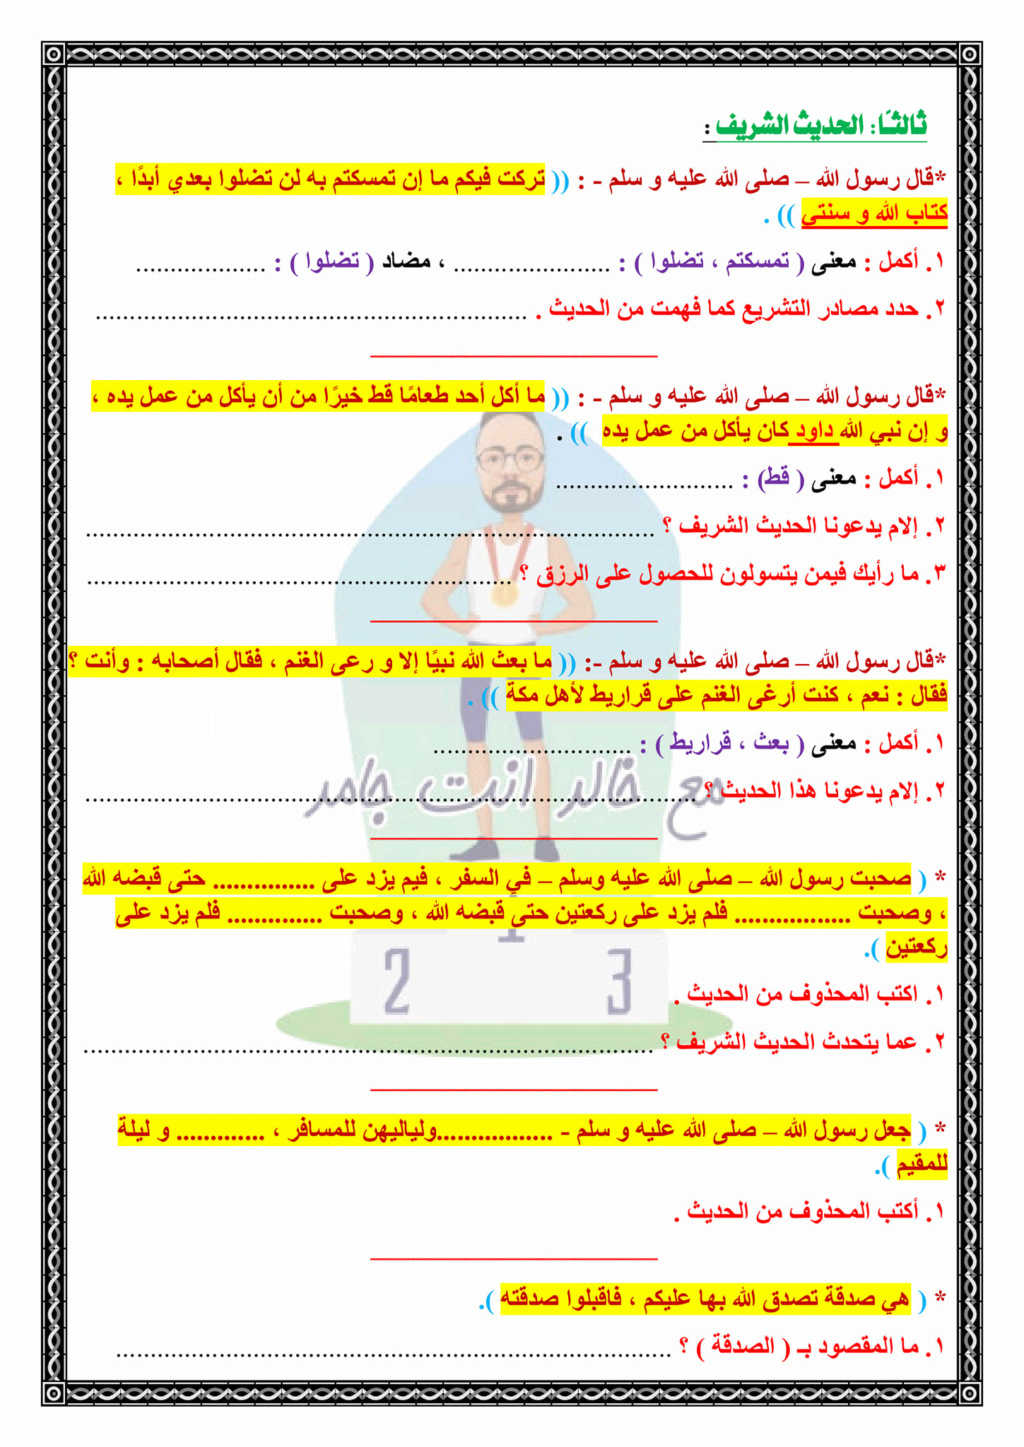 مراجعة التربية الإسلامية الصف الثاني الإعدادي ترم أول أ. خالد الشريف 2853